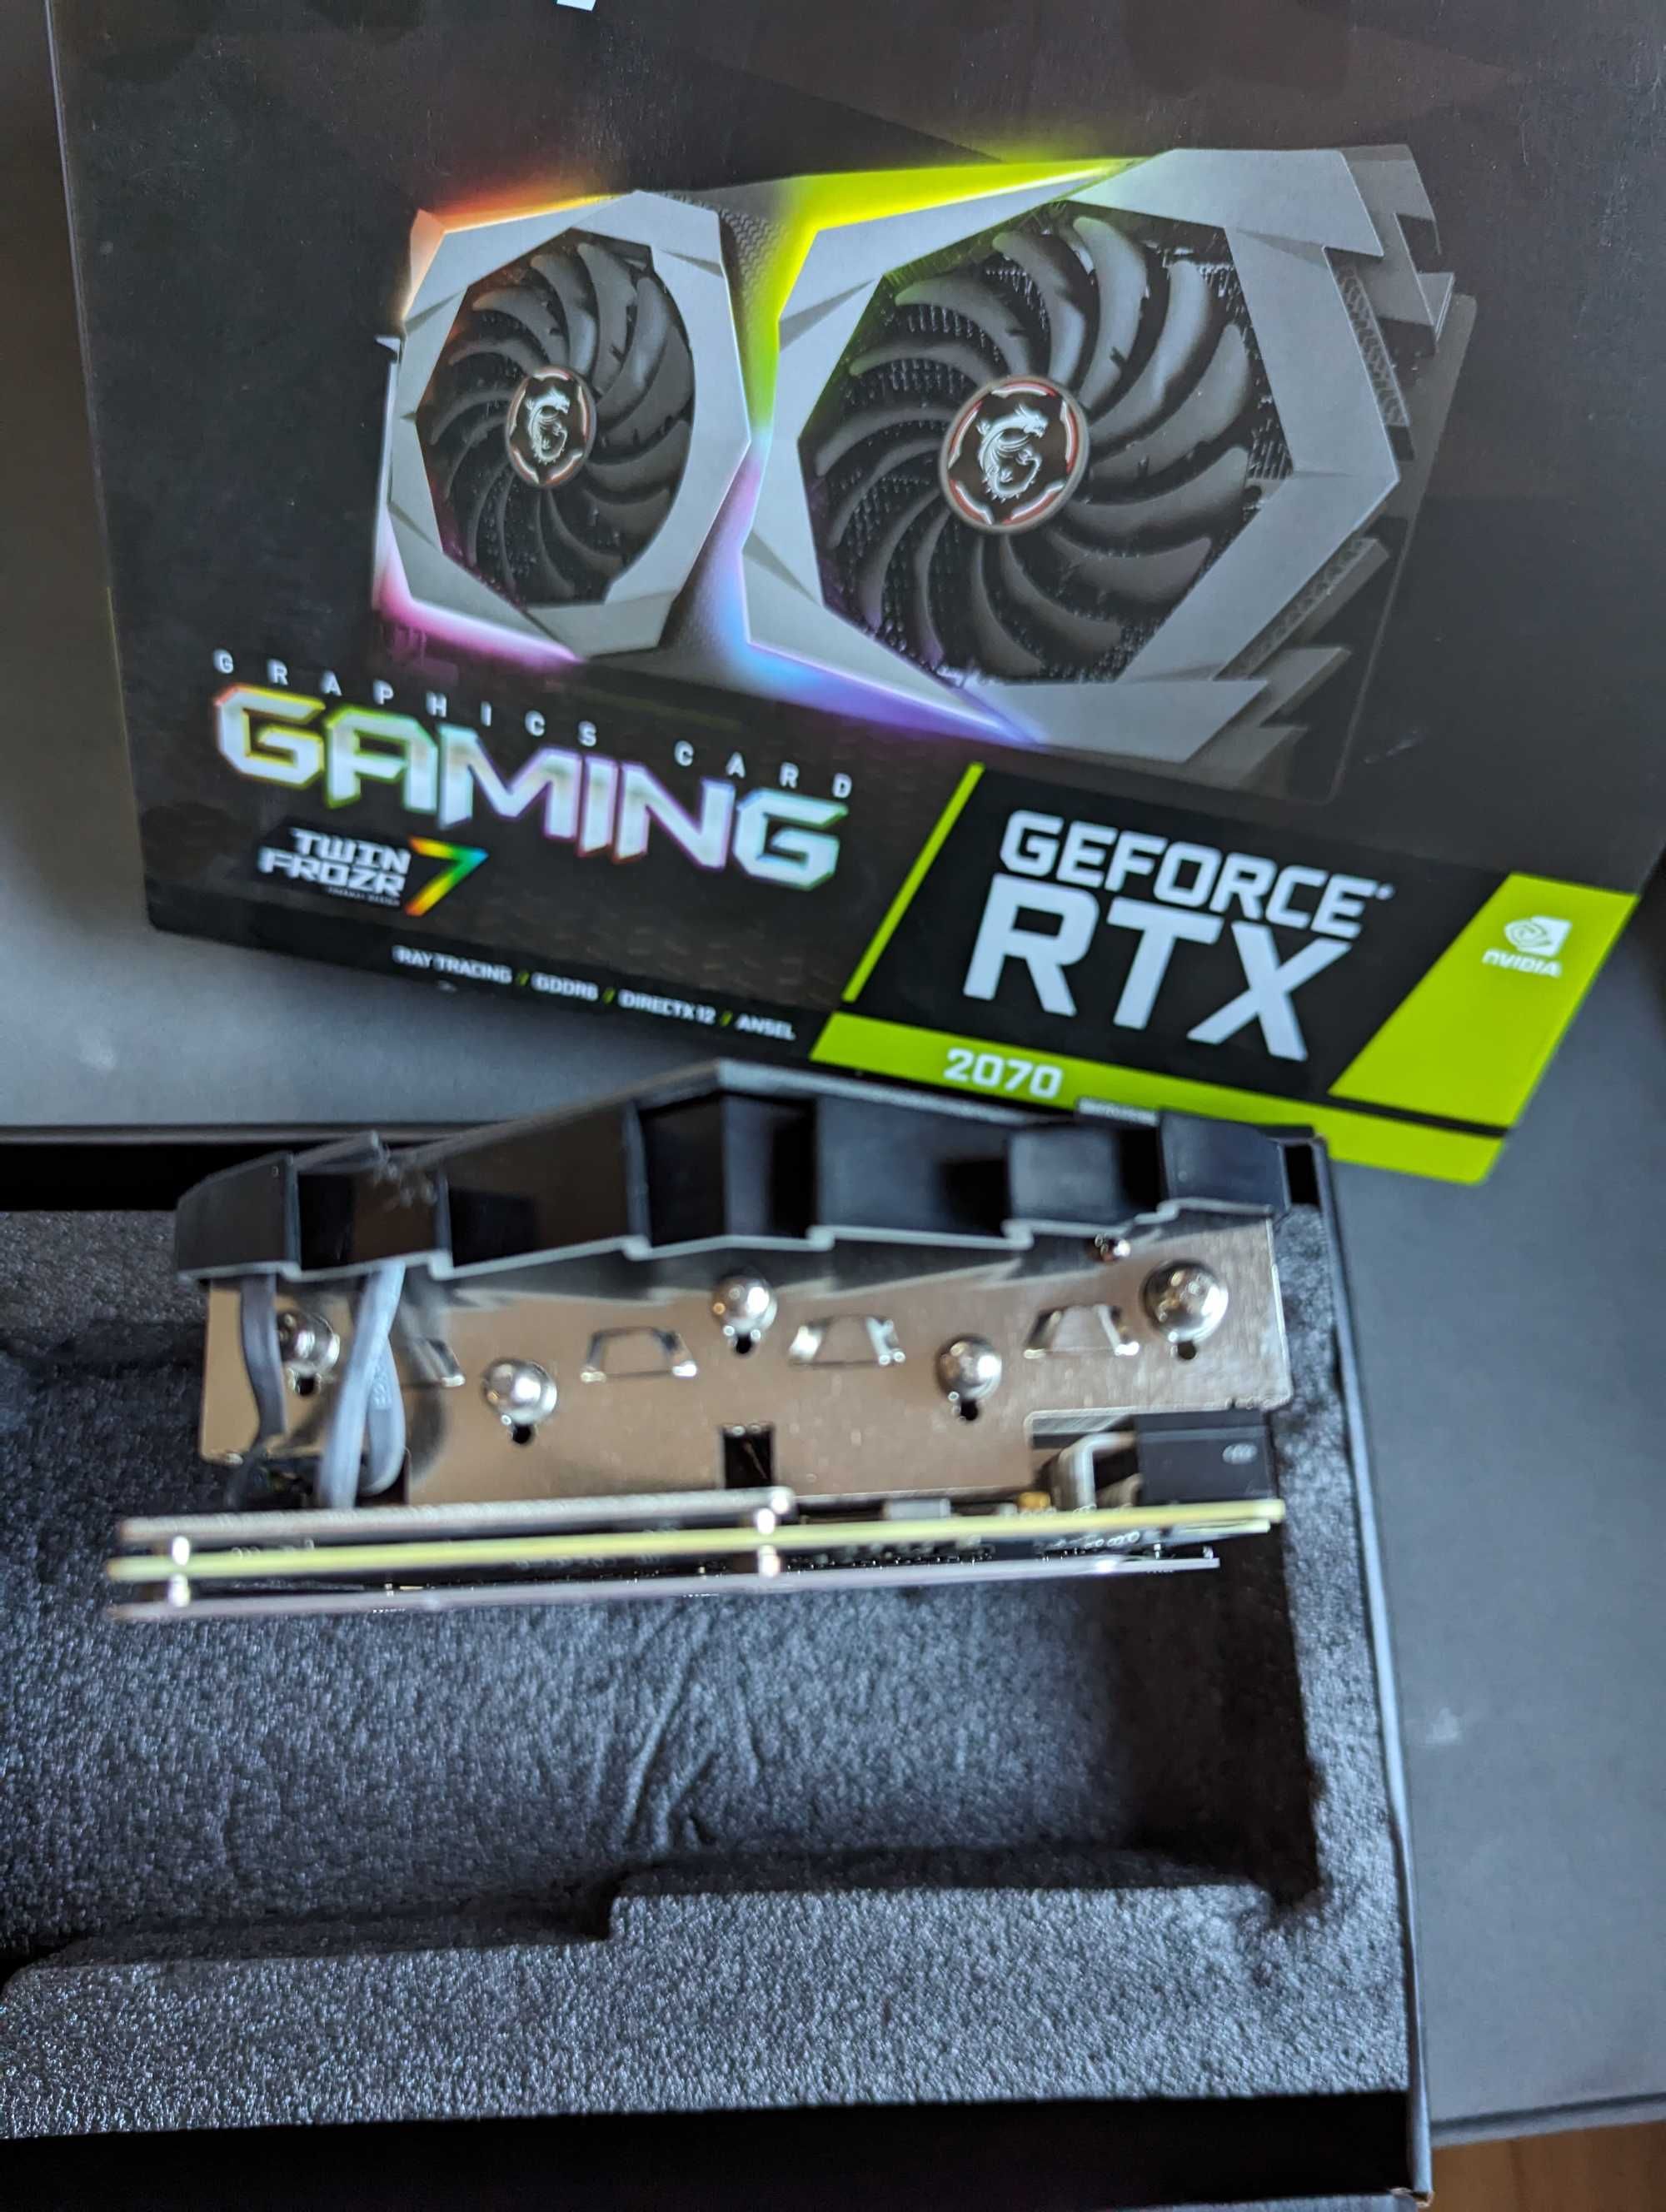 Geforce GTX 2070 MSI 8GB и Захранване Thunder RGB | RX-735AP - 735W